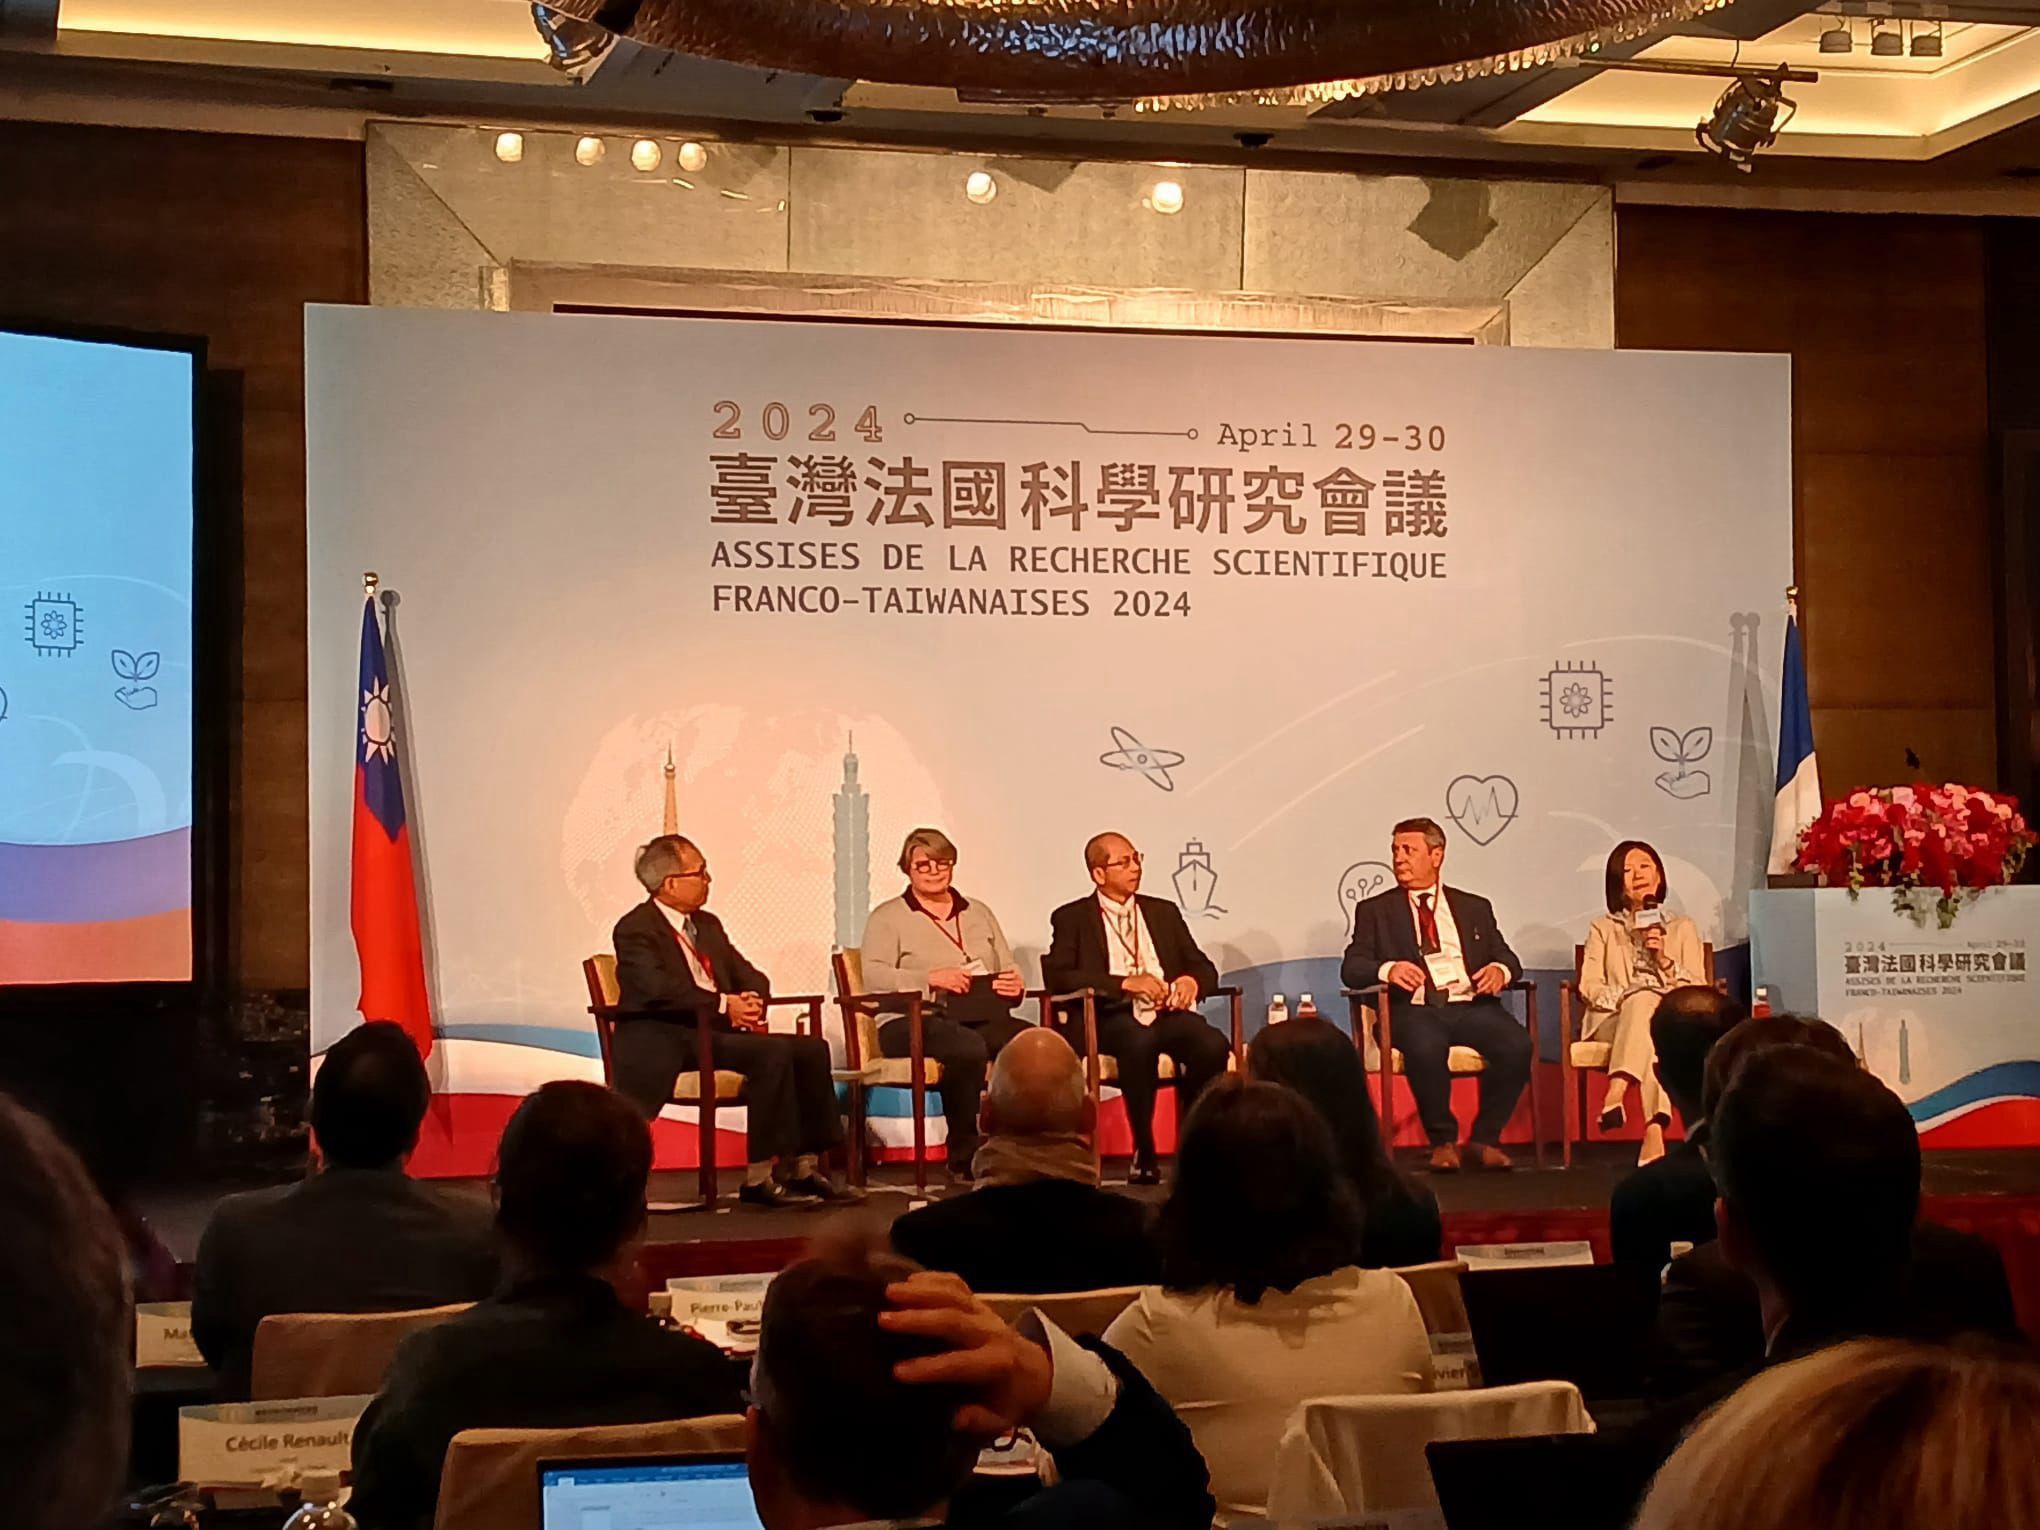  Retour sur les premières assises de la recherche scientifique franco-taïwanaises à Taipei 